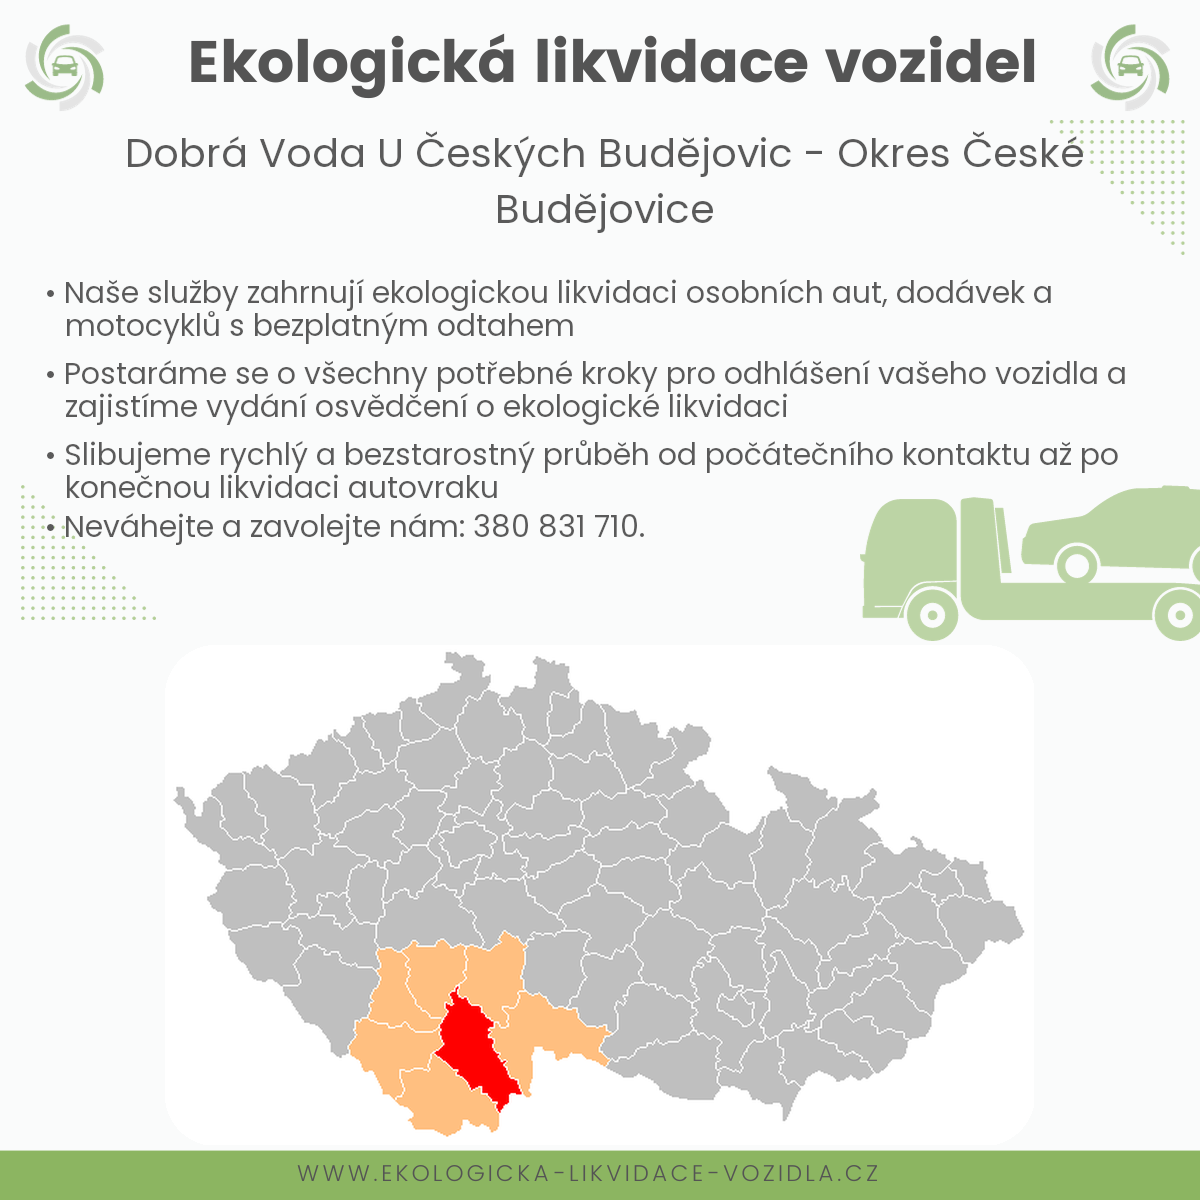 likvidace vozidel - Dobrá Voda u Českých Budějovic